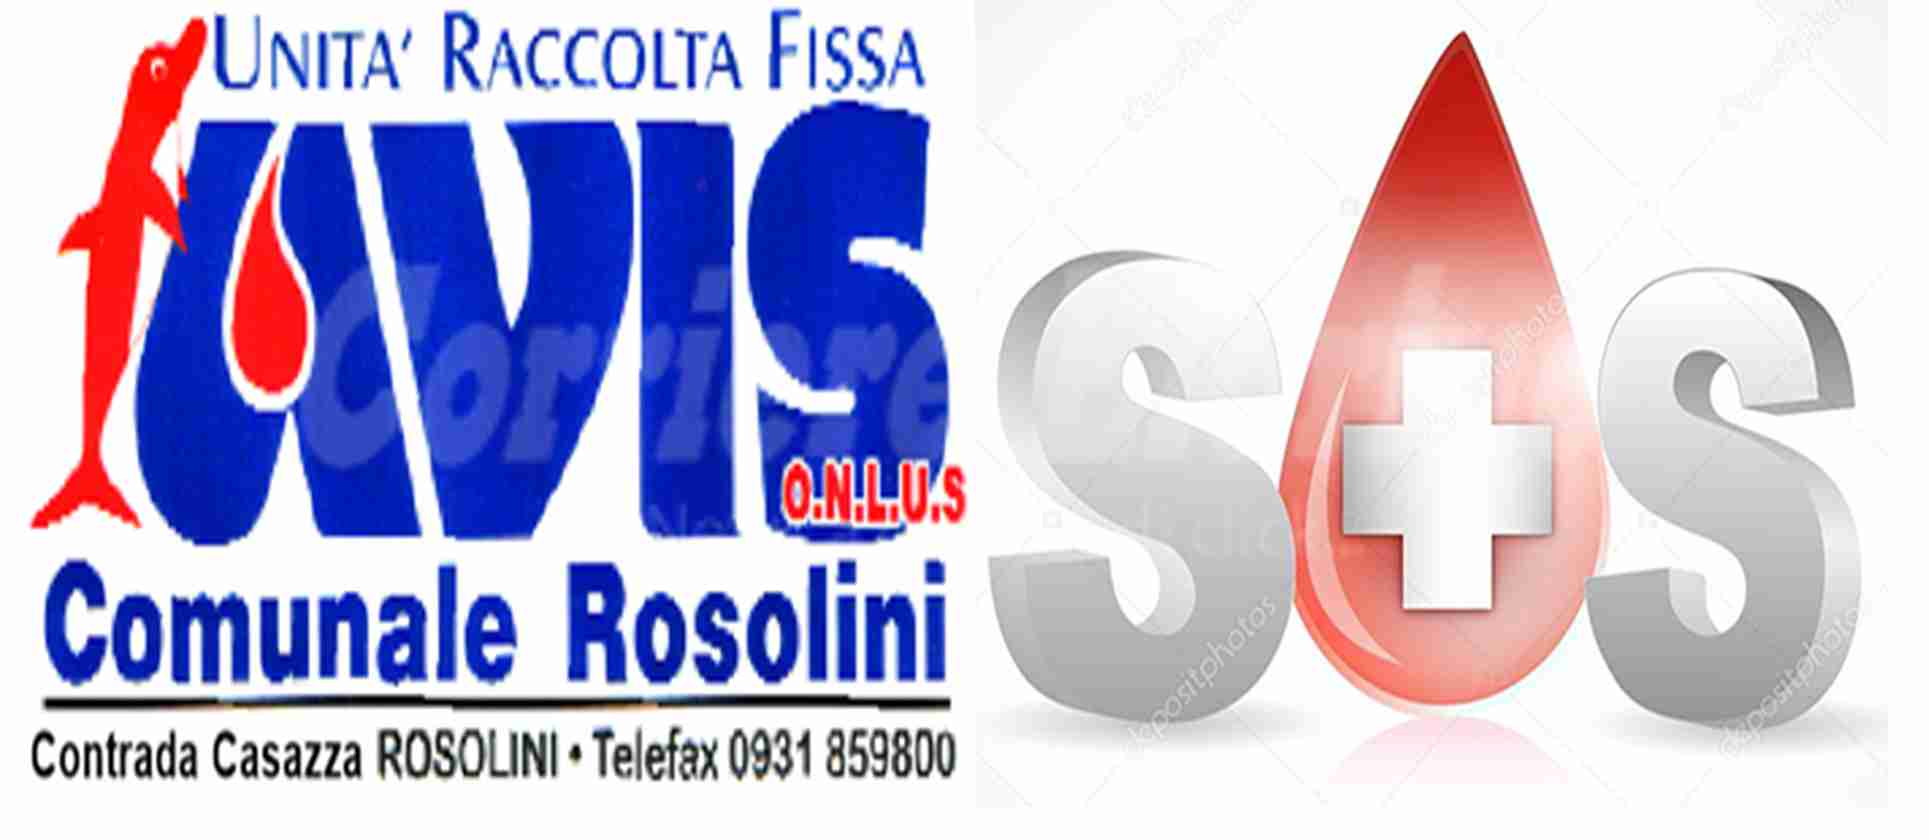 SOS Sangue, Avis Rosolini invita a donare: “E’ un’urgenza, manca sangue anche negli ospedali”